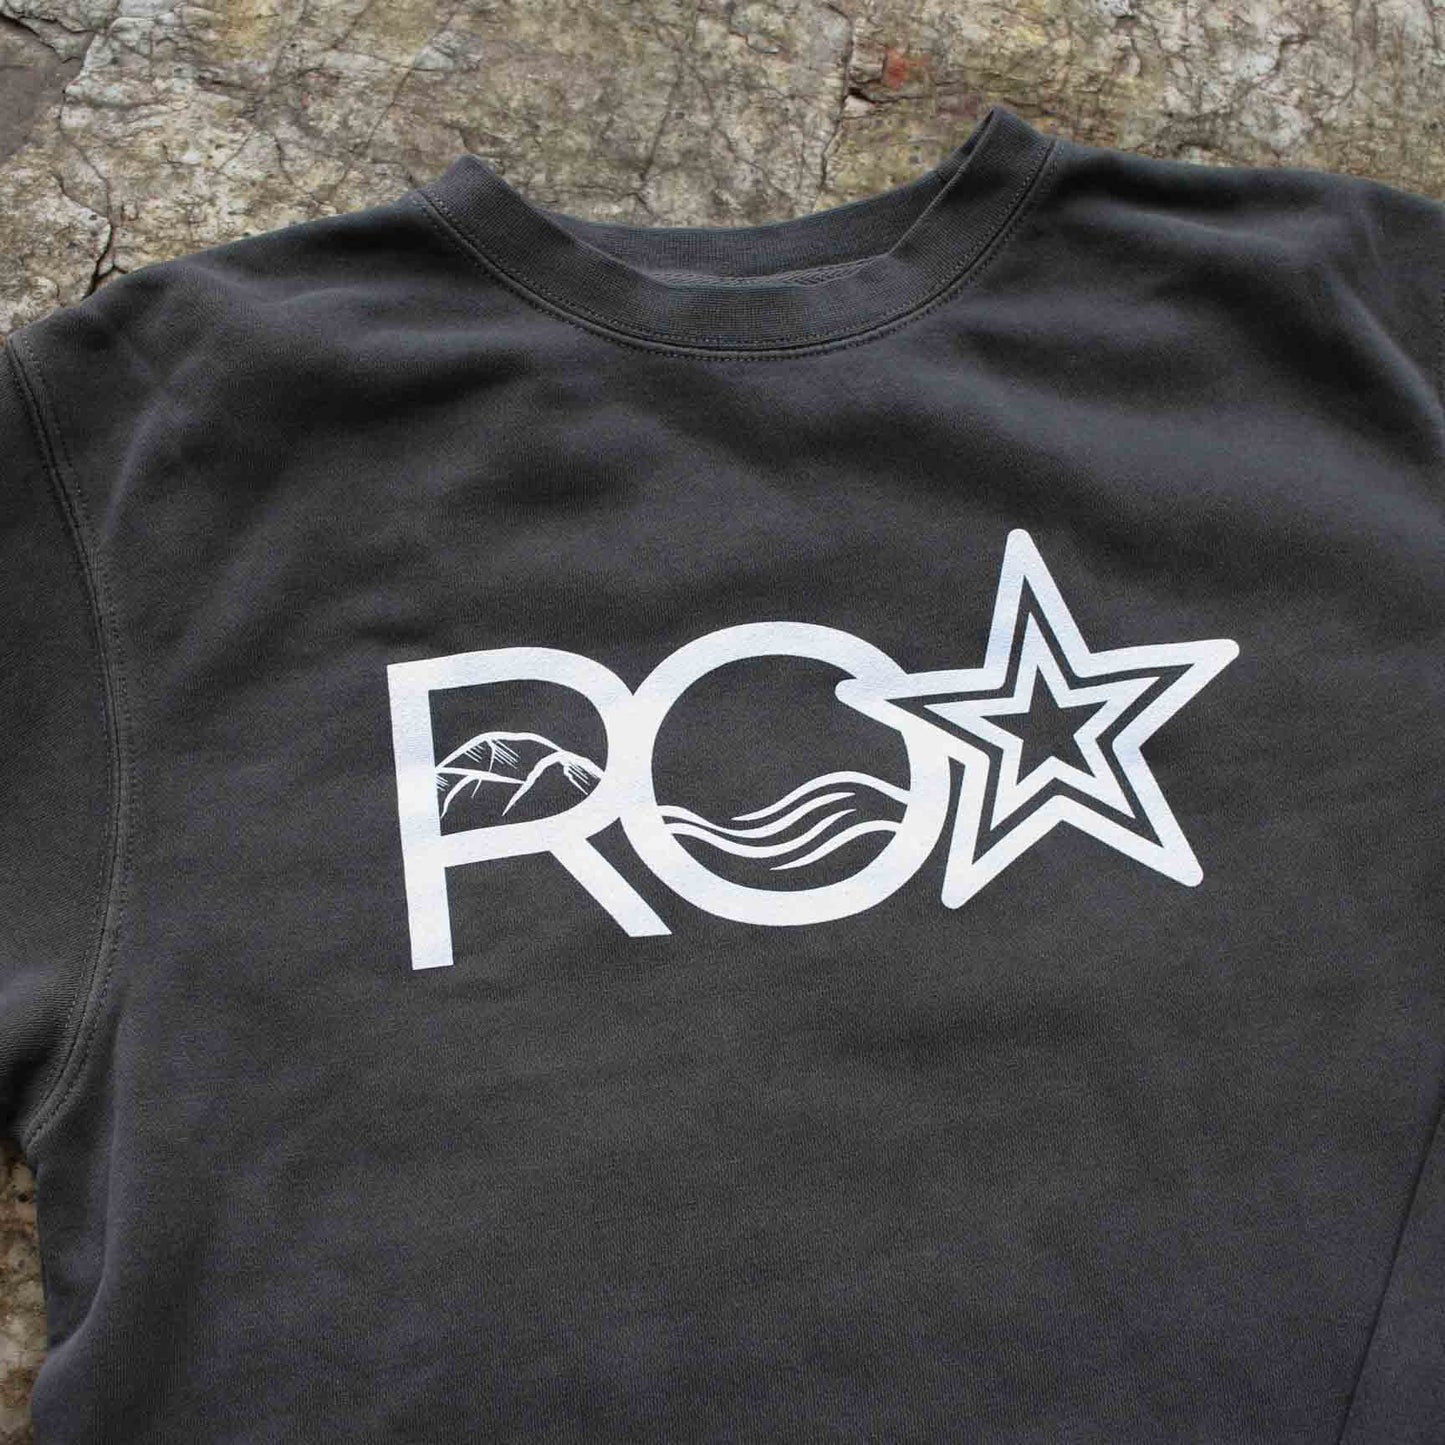 Roanoke Lifestyle - ROA Sweatshirt